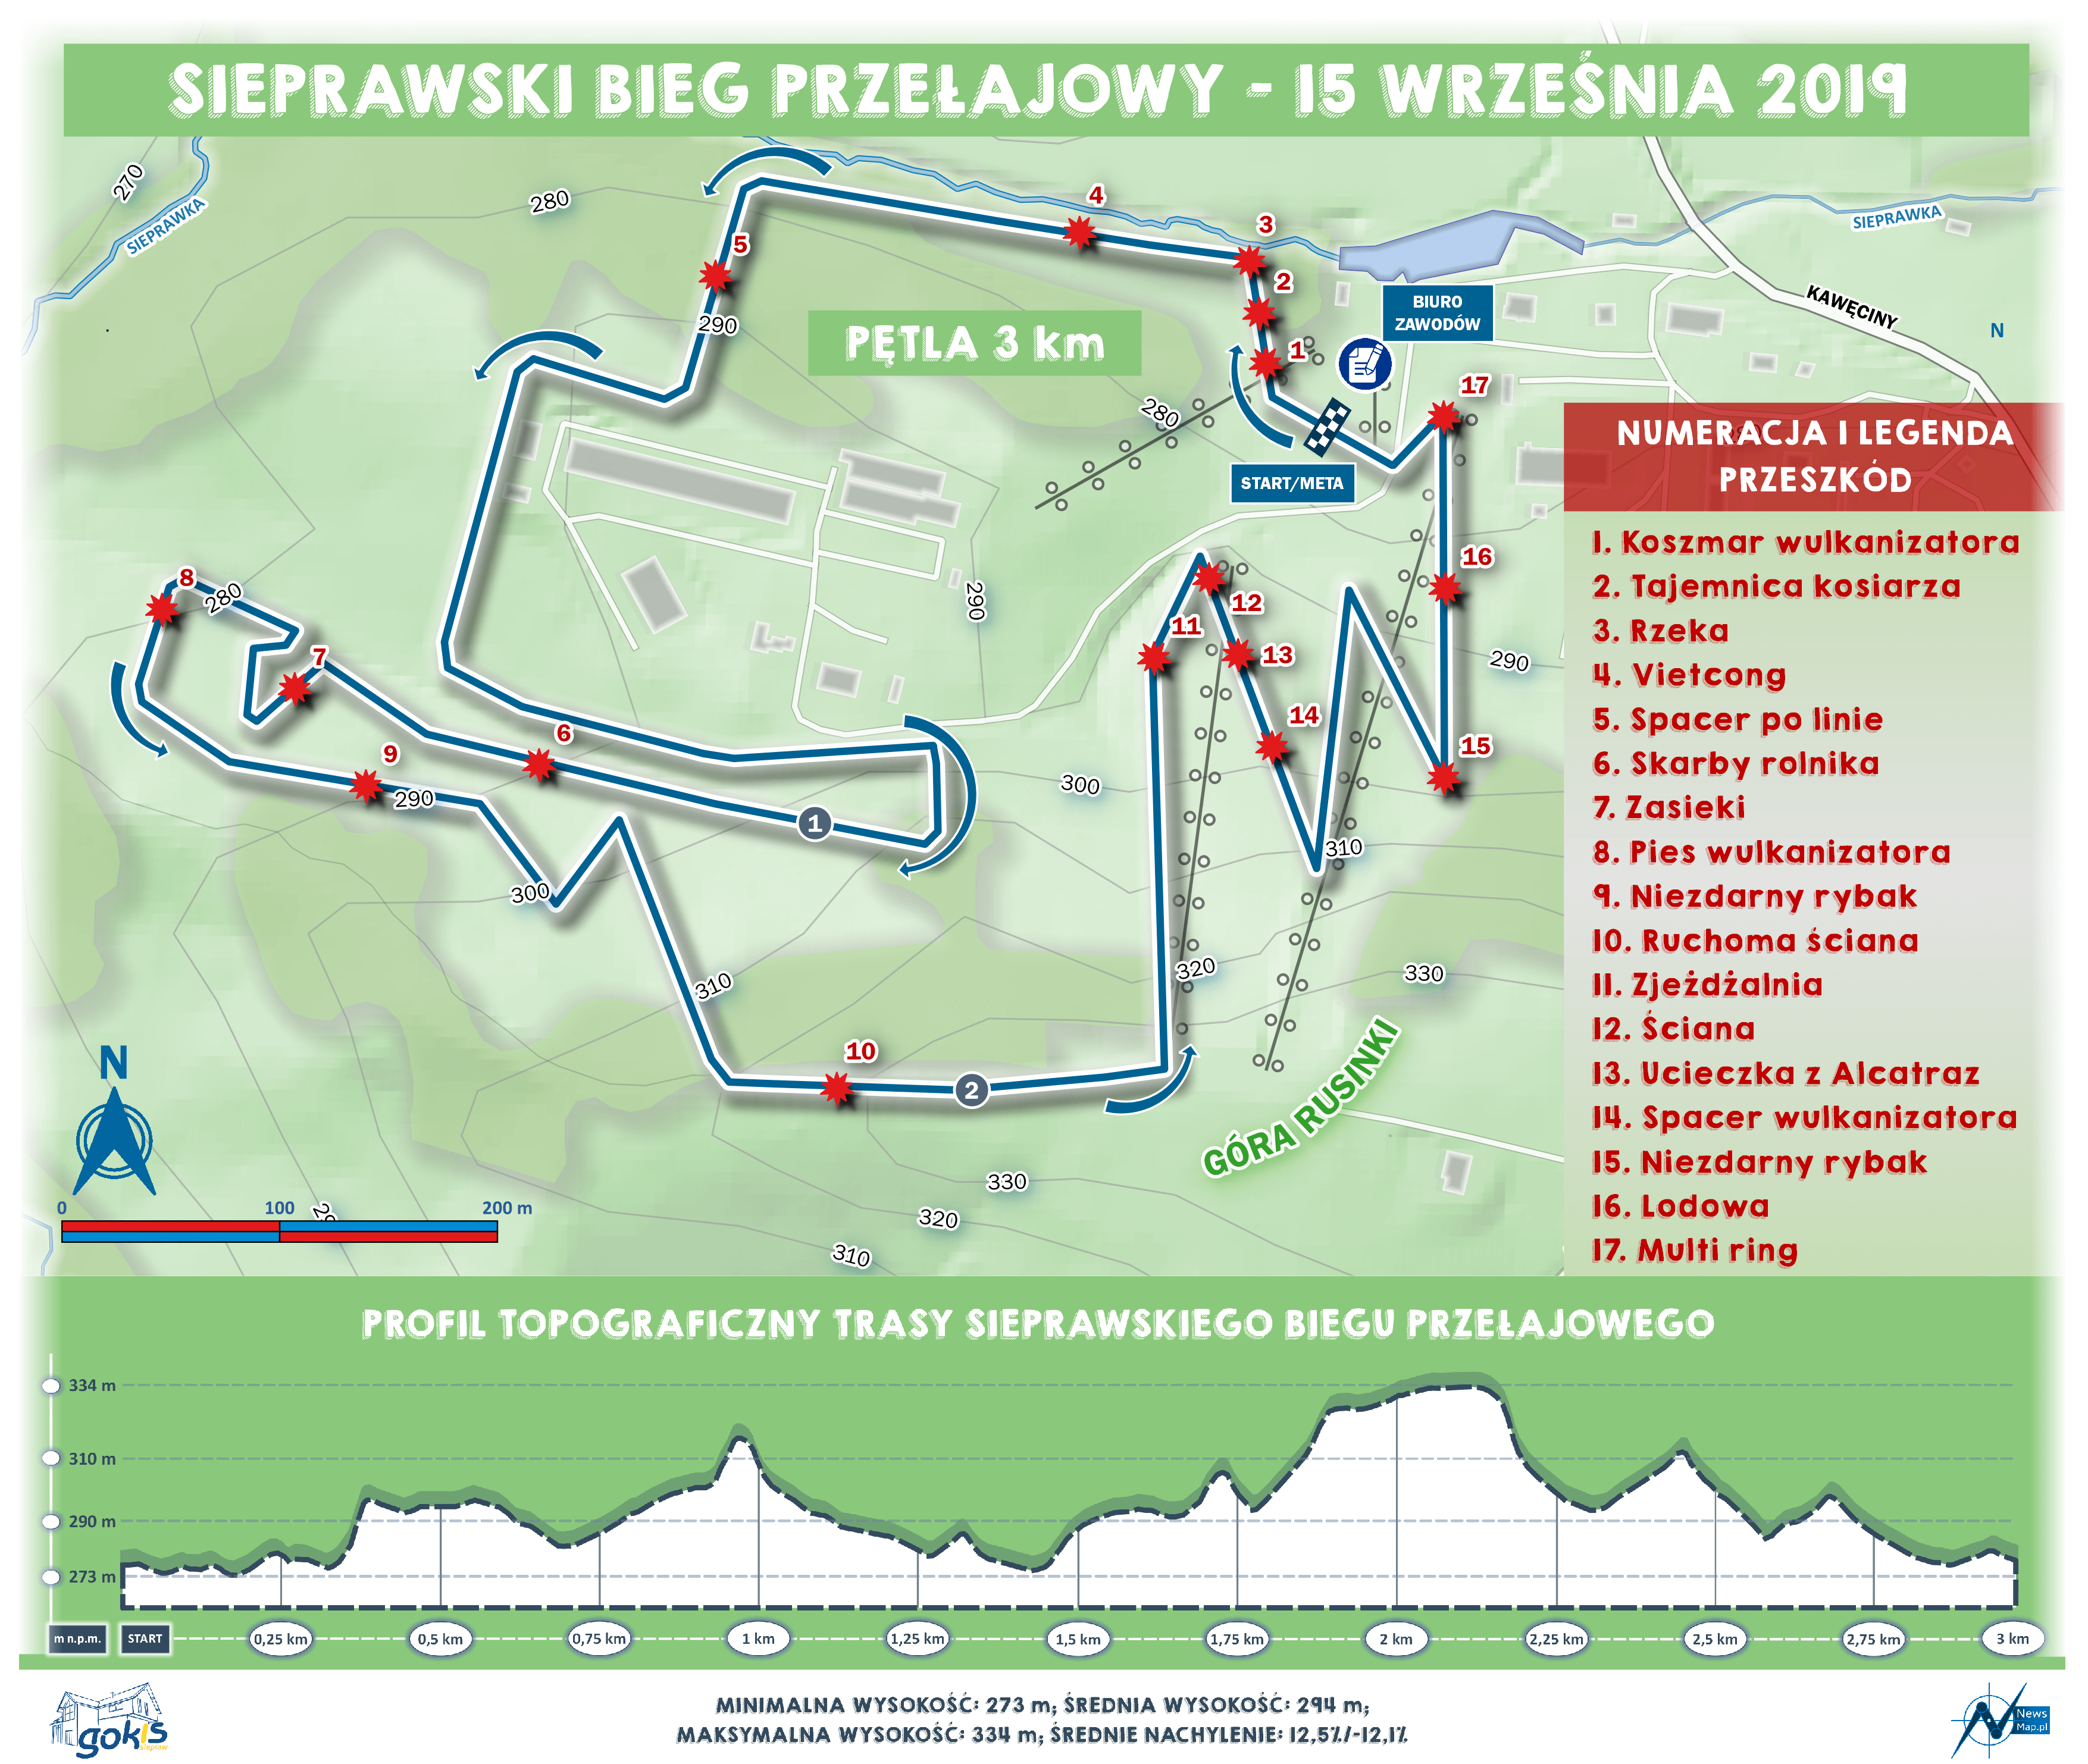 Sieprawski-Bieg-Przejałowy-2019-mapa-statyczna-on-line